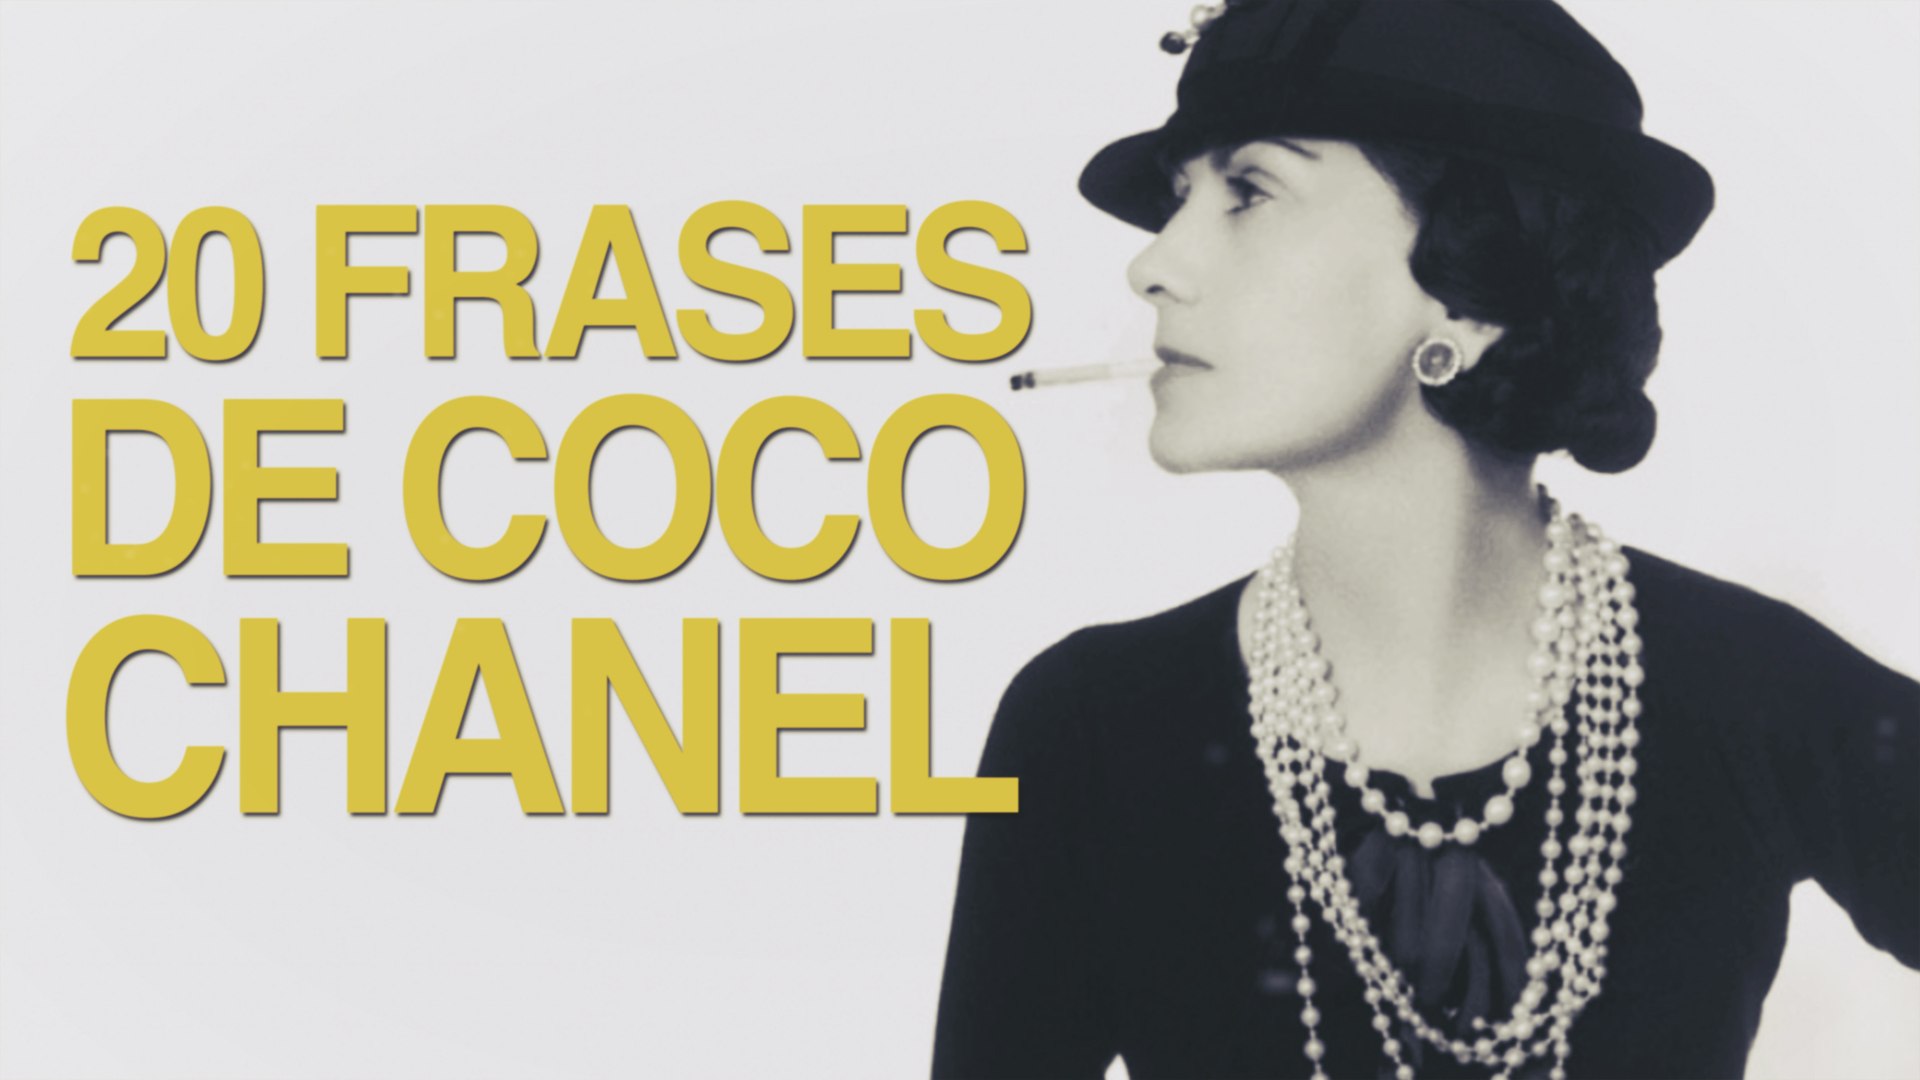 20 Frases de Coco Chanel, el feminismo de la moda - Vídeo Dailymotion